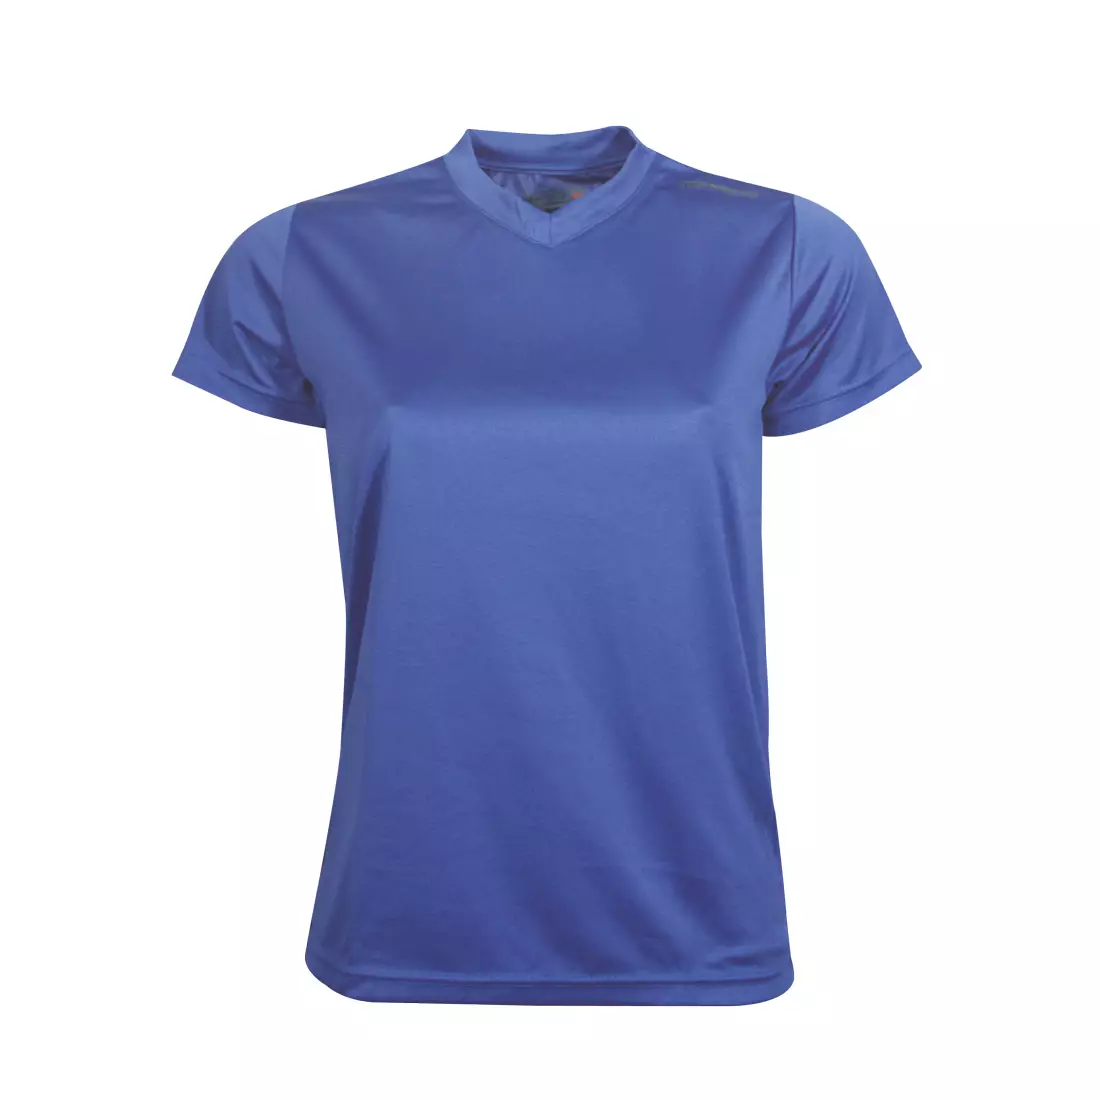 NEWLINE BASE COOL T-SHIRT - women's running T-shirt 13614-11